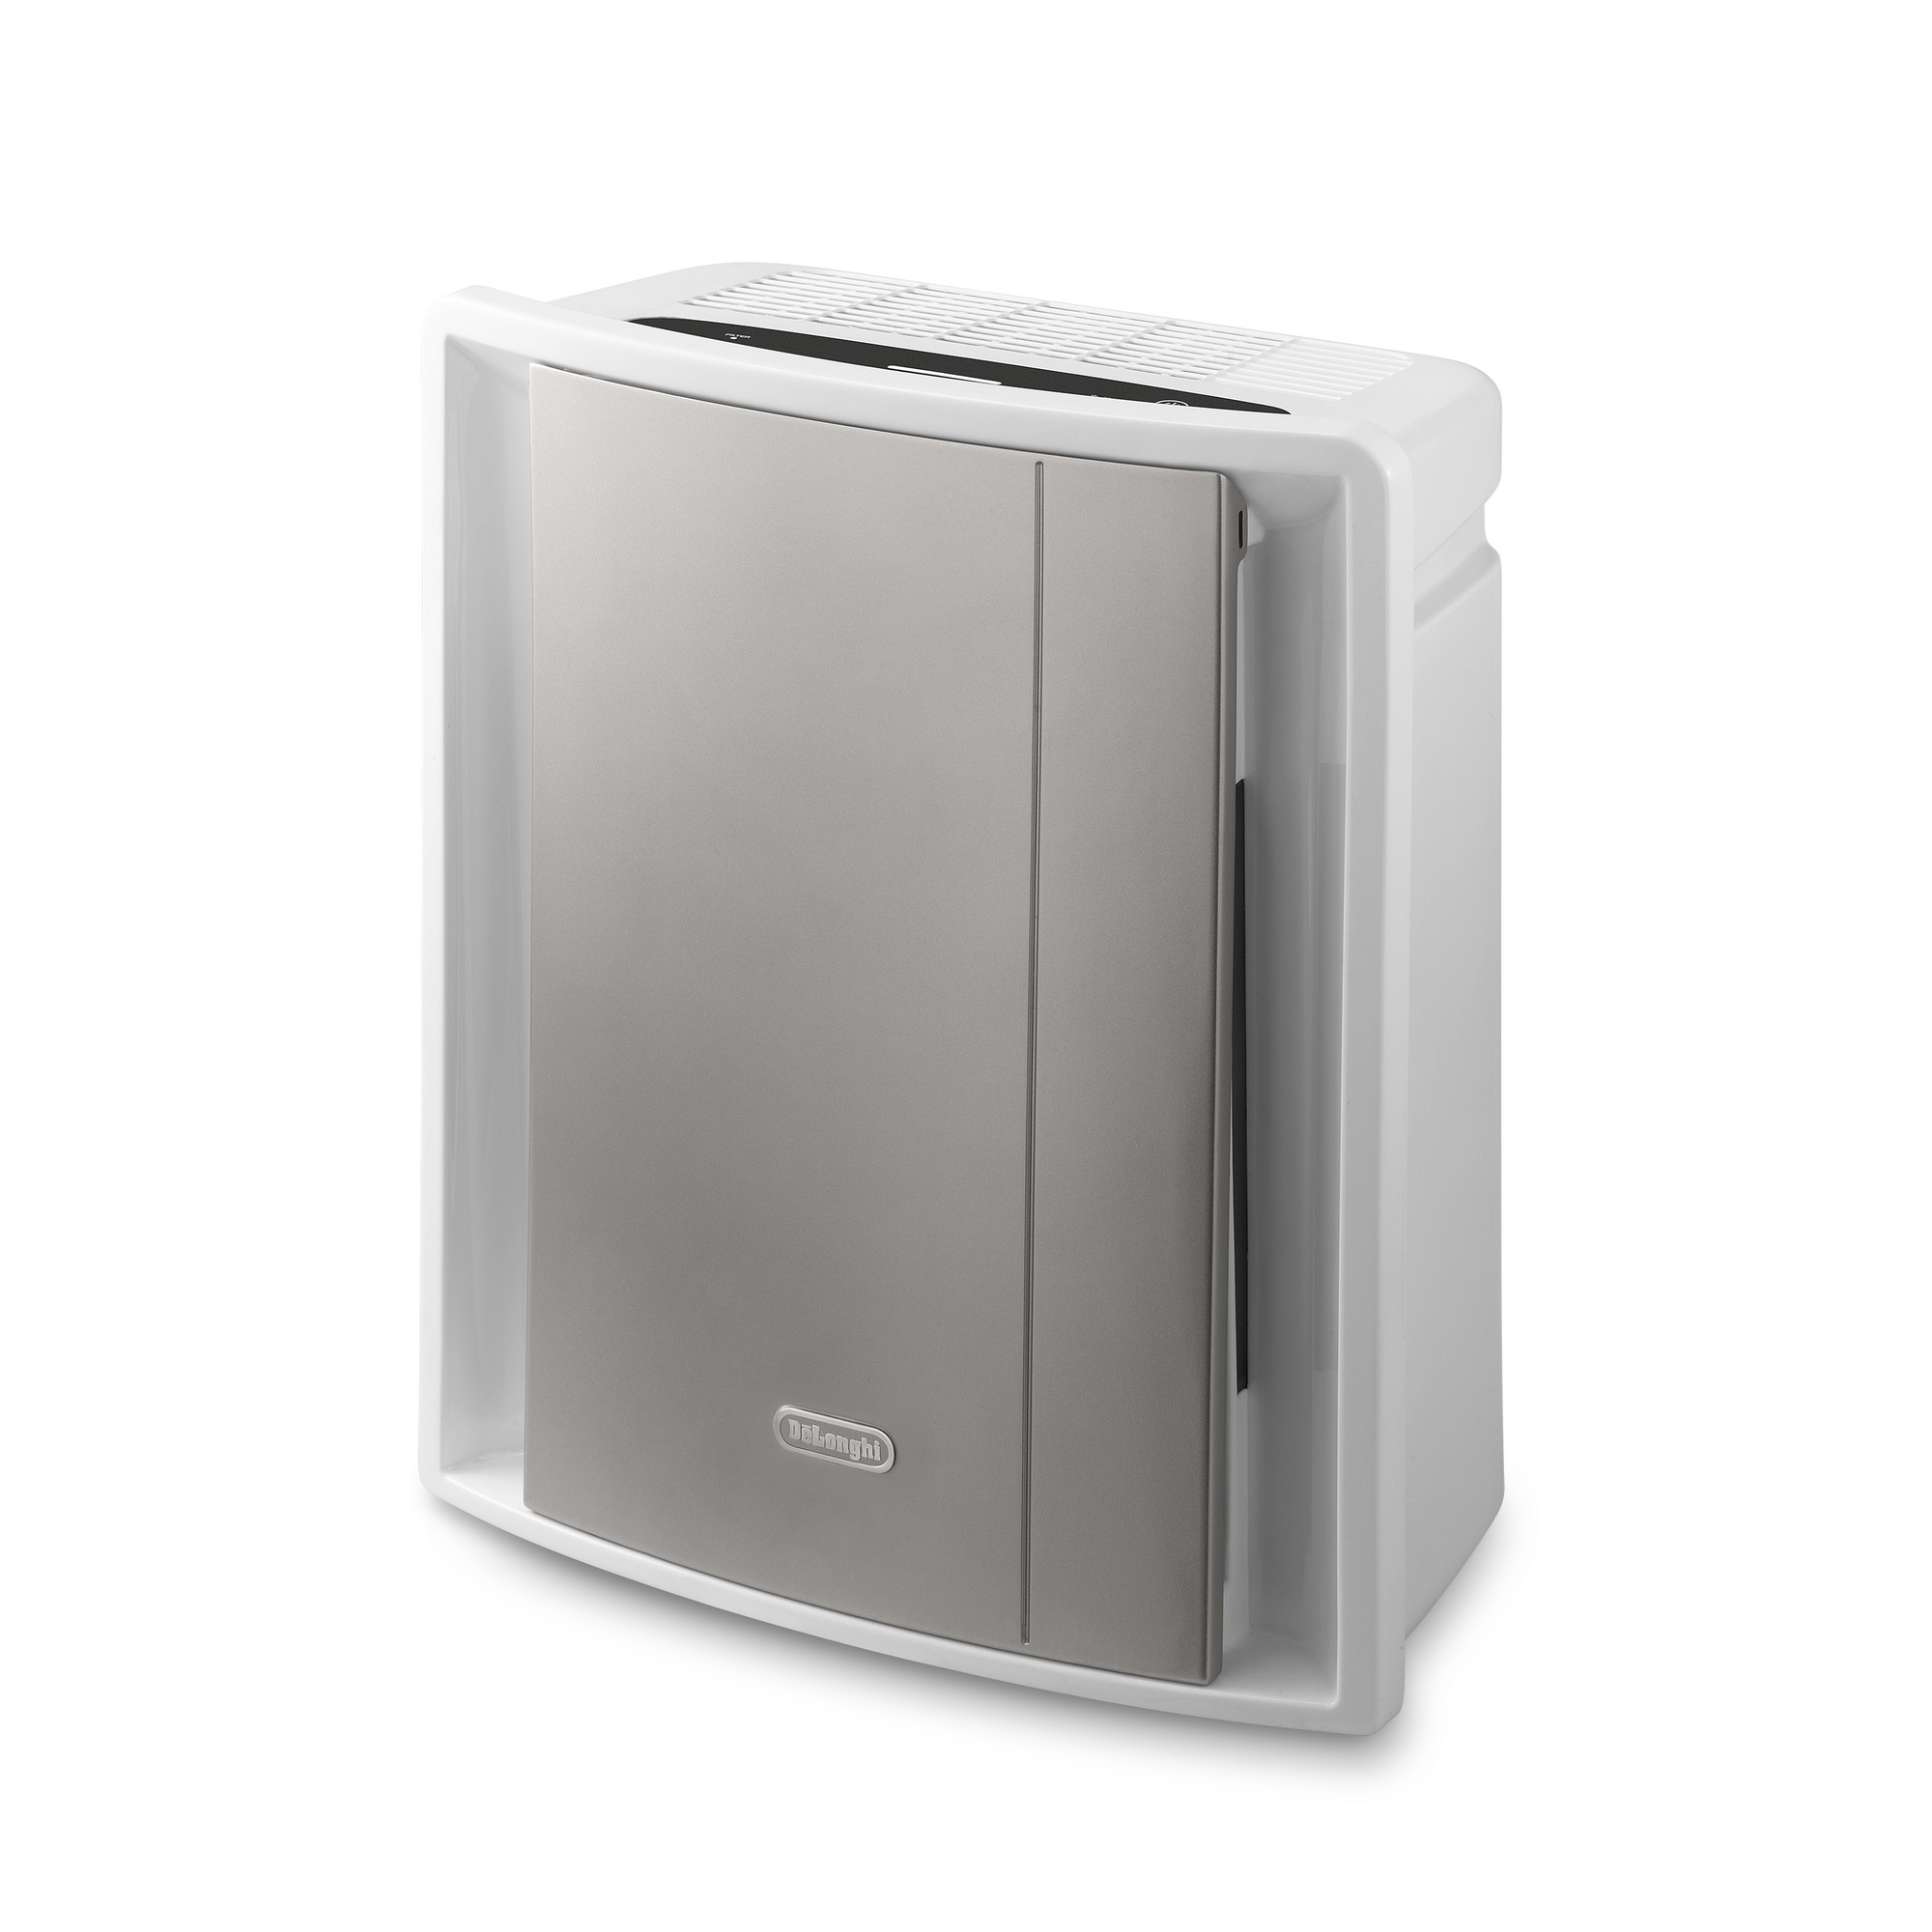 Luftreiniger 'AC 230' grau-weiß, fünf Filterstufen + product picture